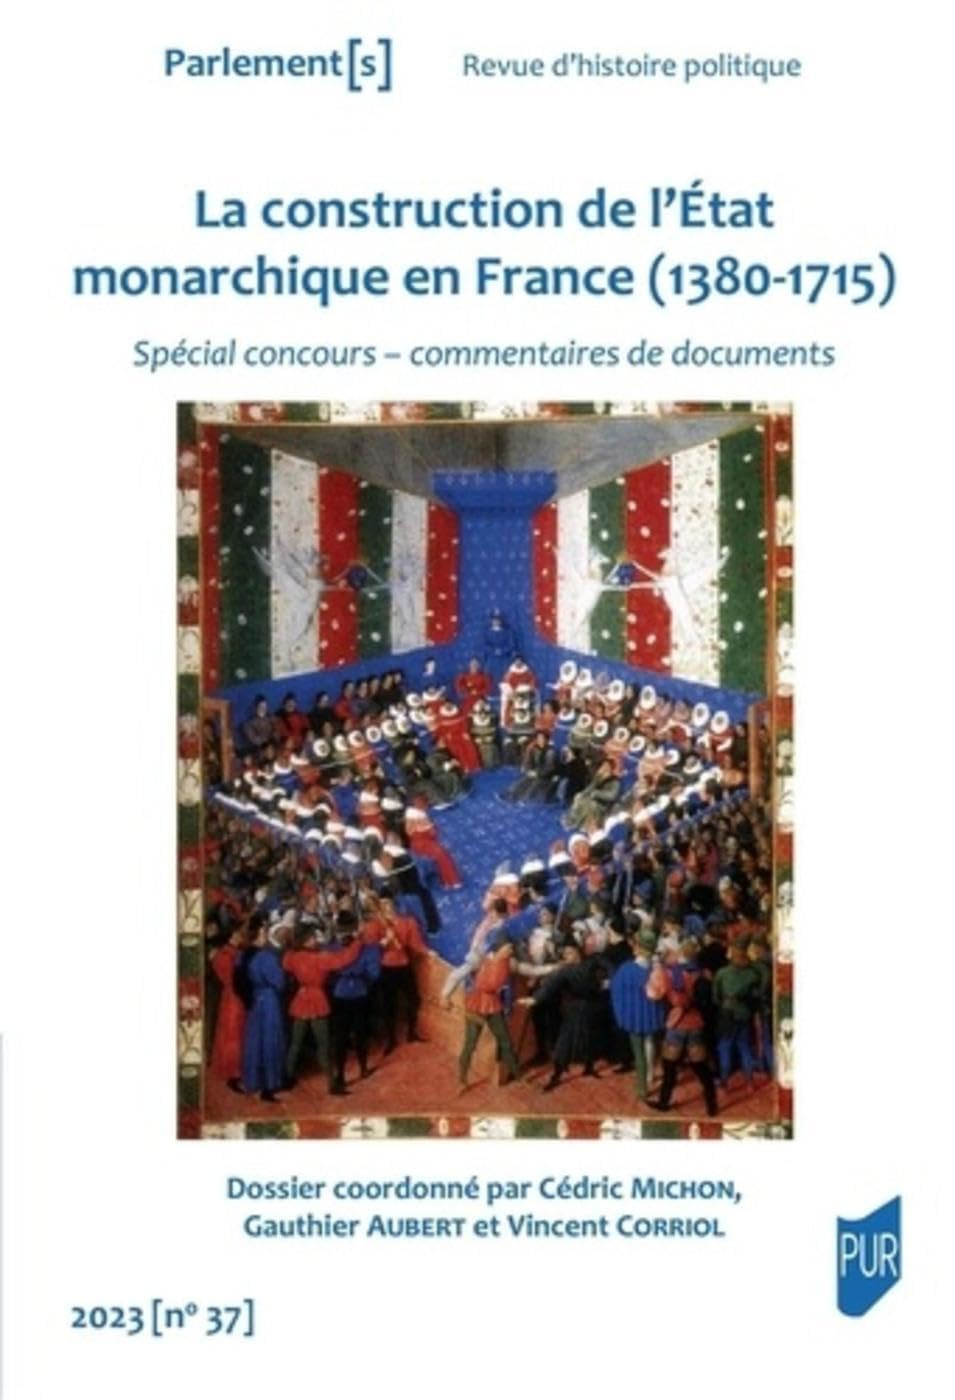 Parlement[s], n° 37. La construction de l'Etat monarchique en France (1380-1715) : spécial concours,